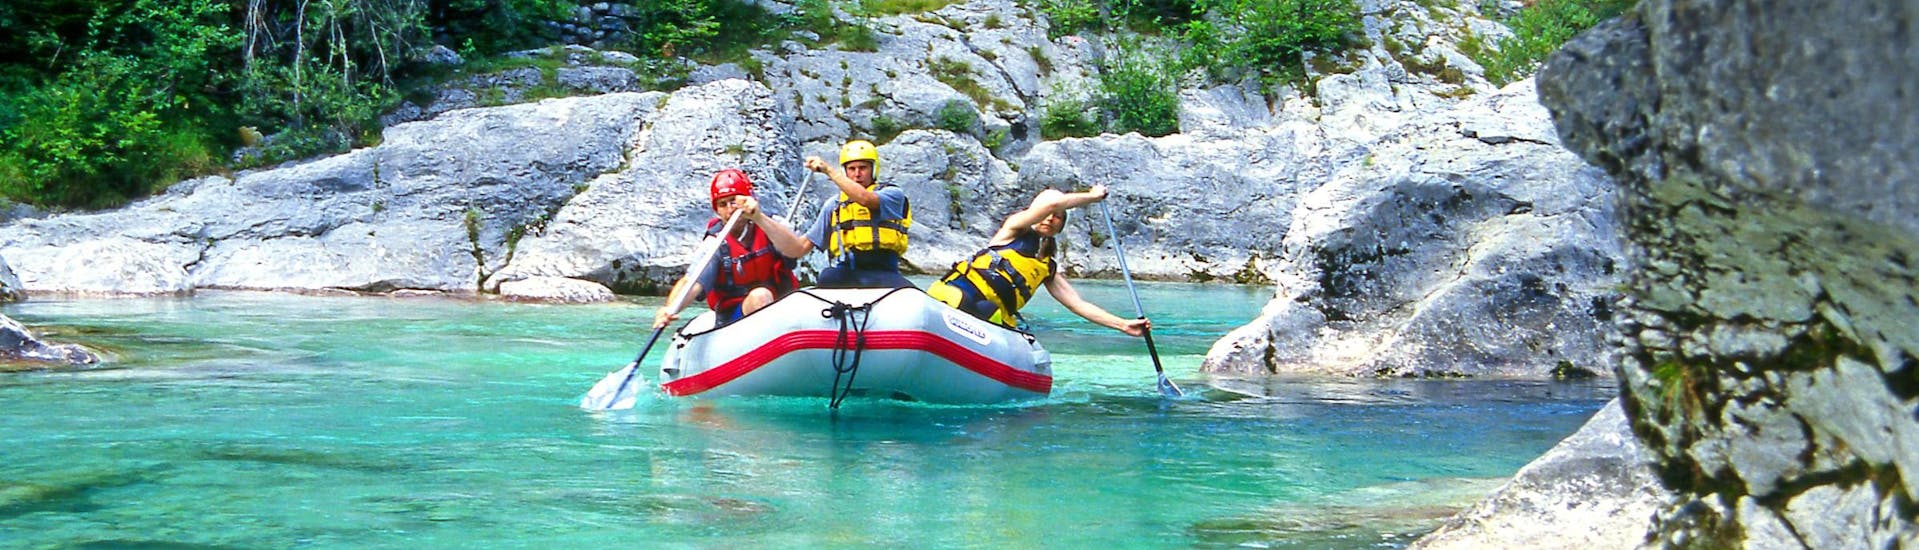 Emozioni forti vissute da un gruppo di giovani nel punto di interesse Sušec, ideale per fare rafting e canyoning.